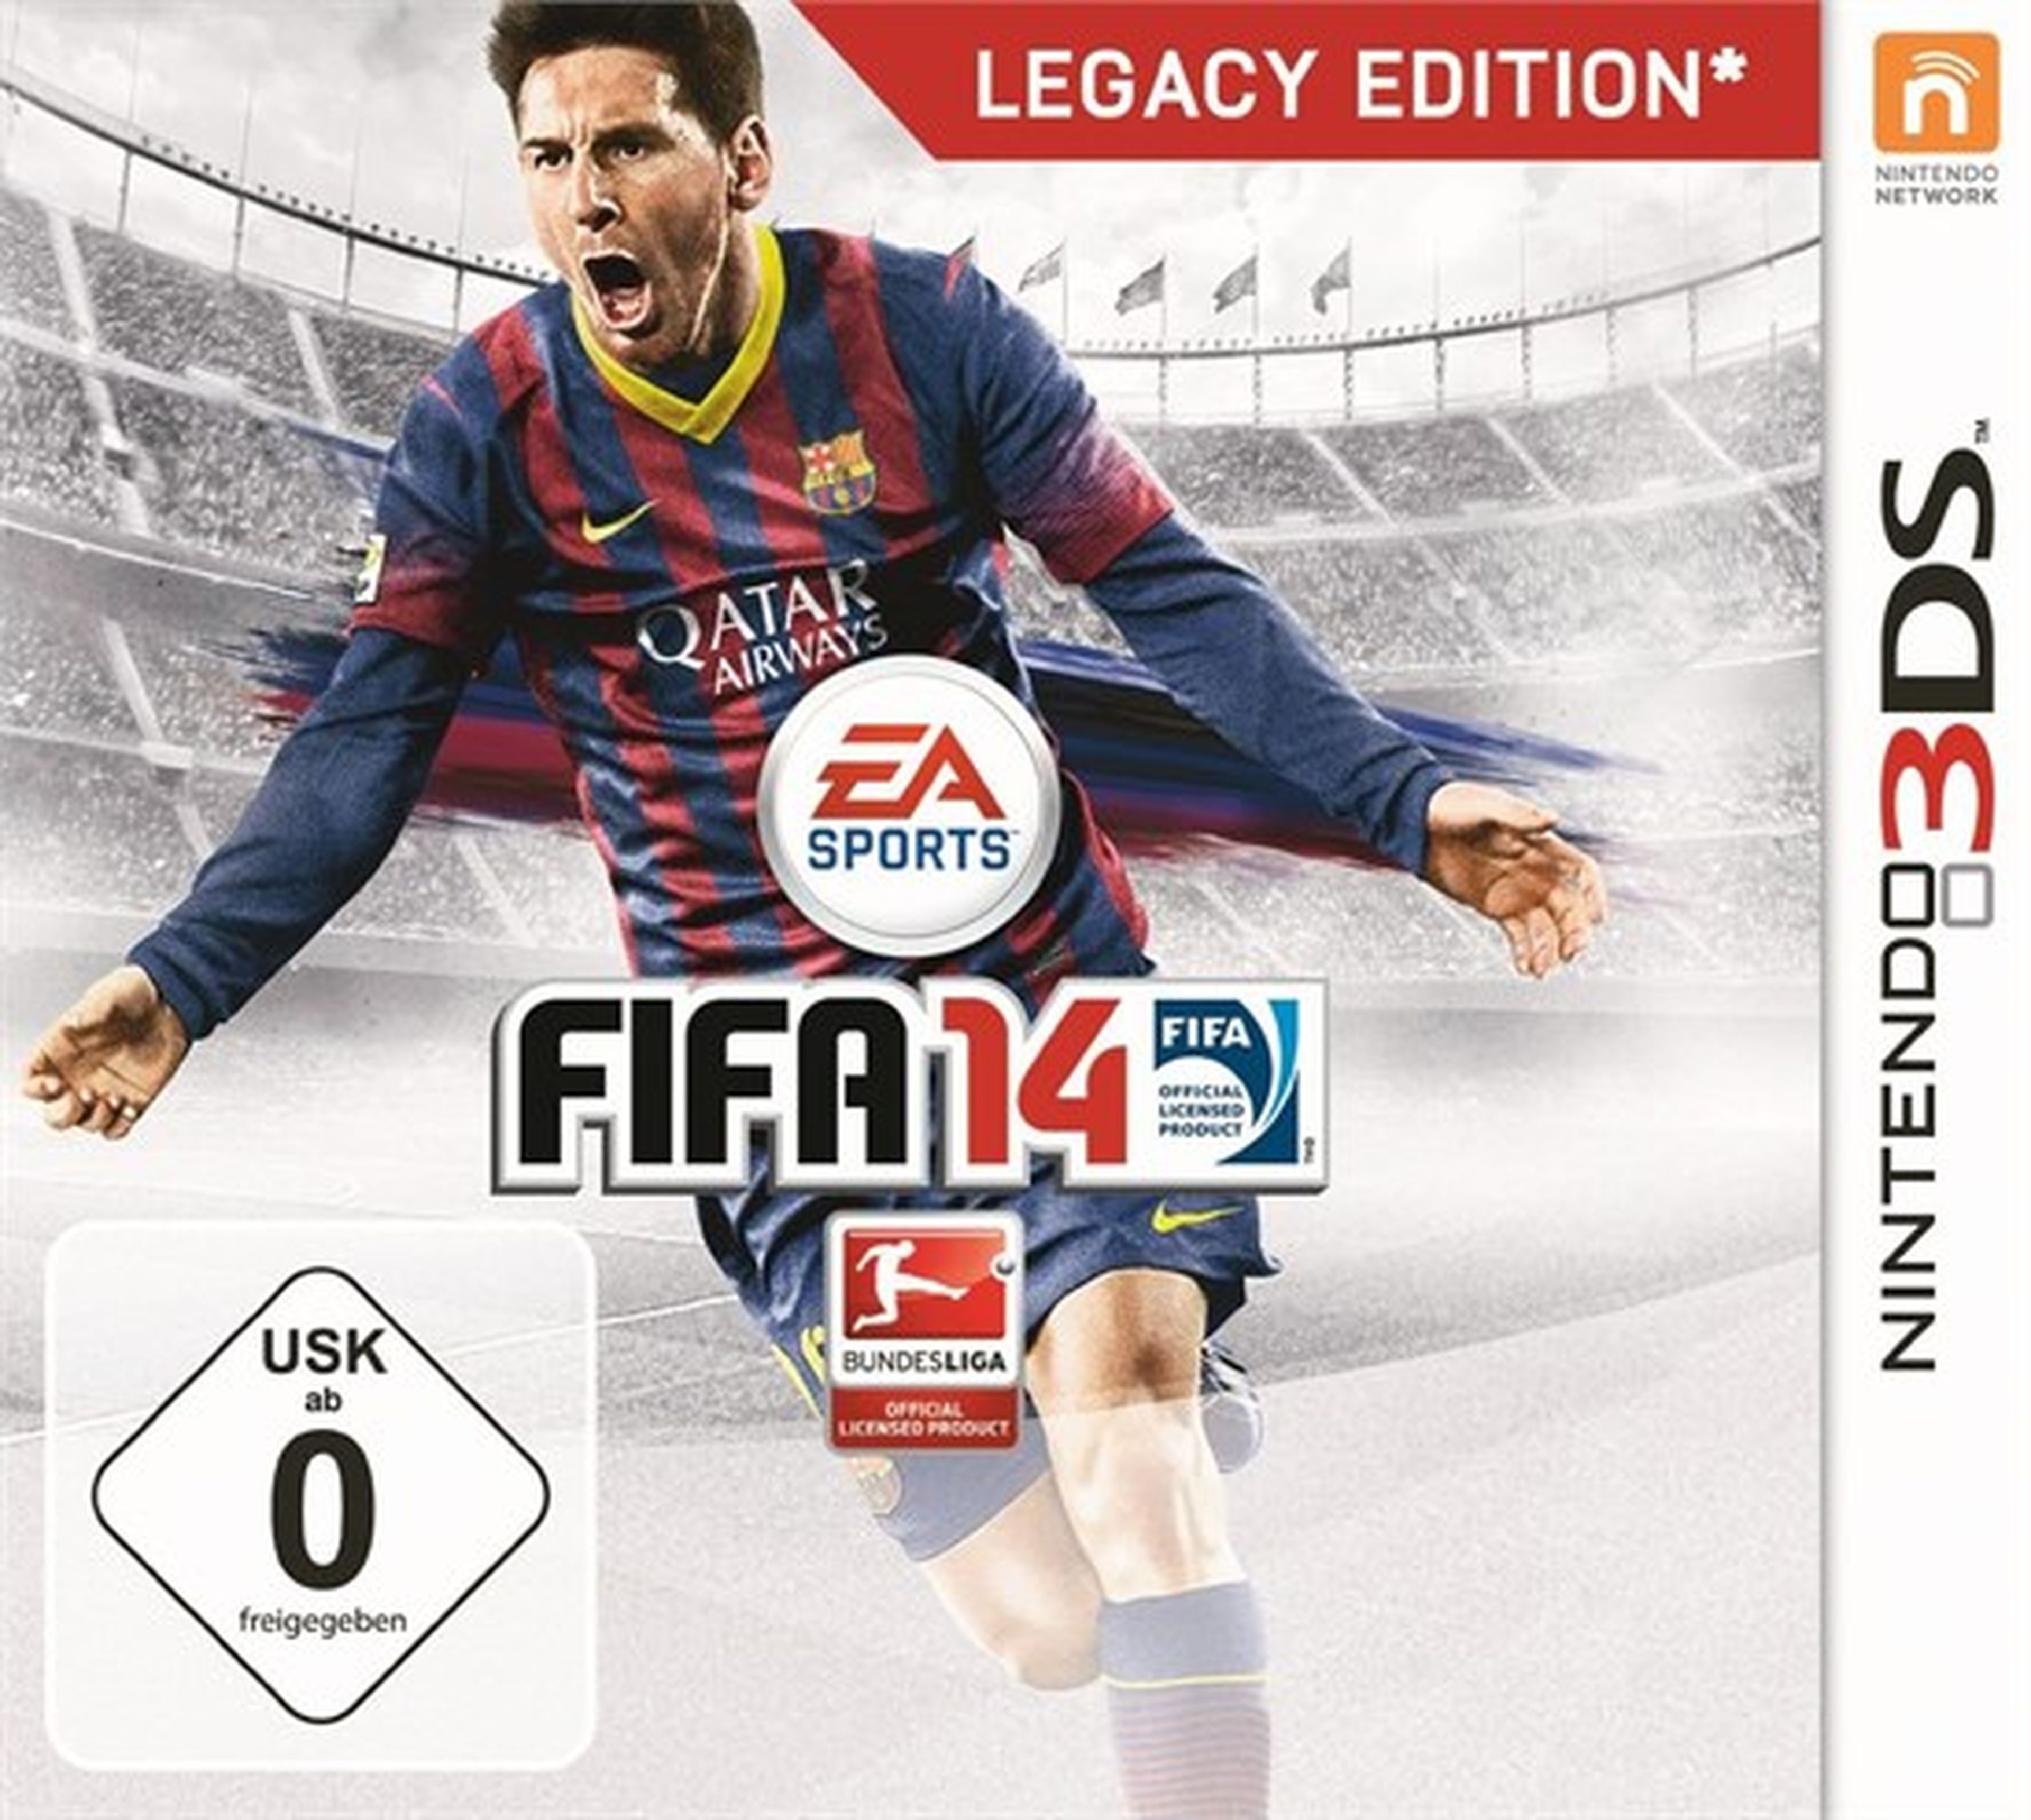 FIFA 14 para Vita y 3DS no incluyen novedades jugables